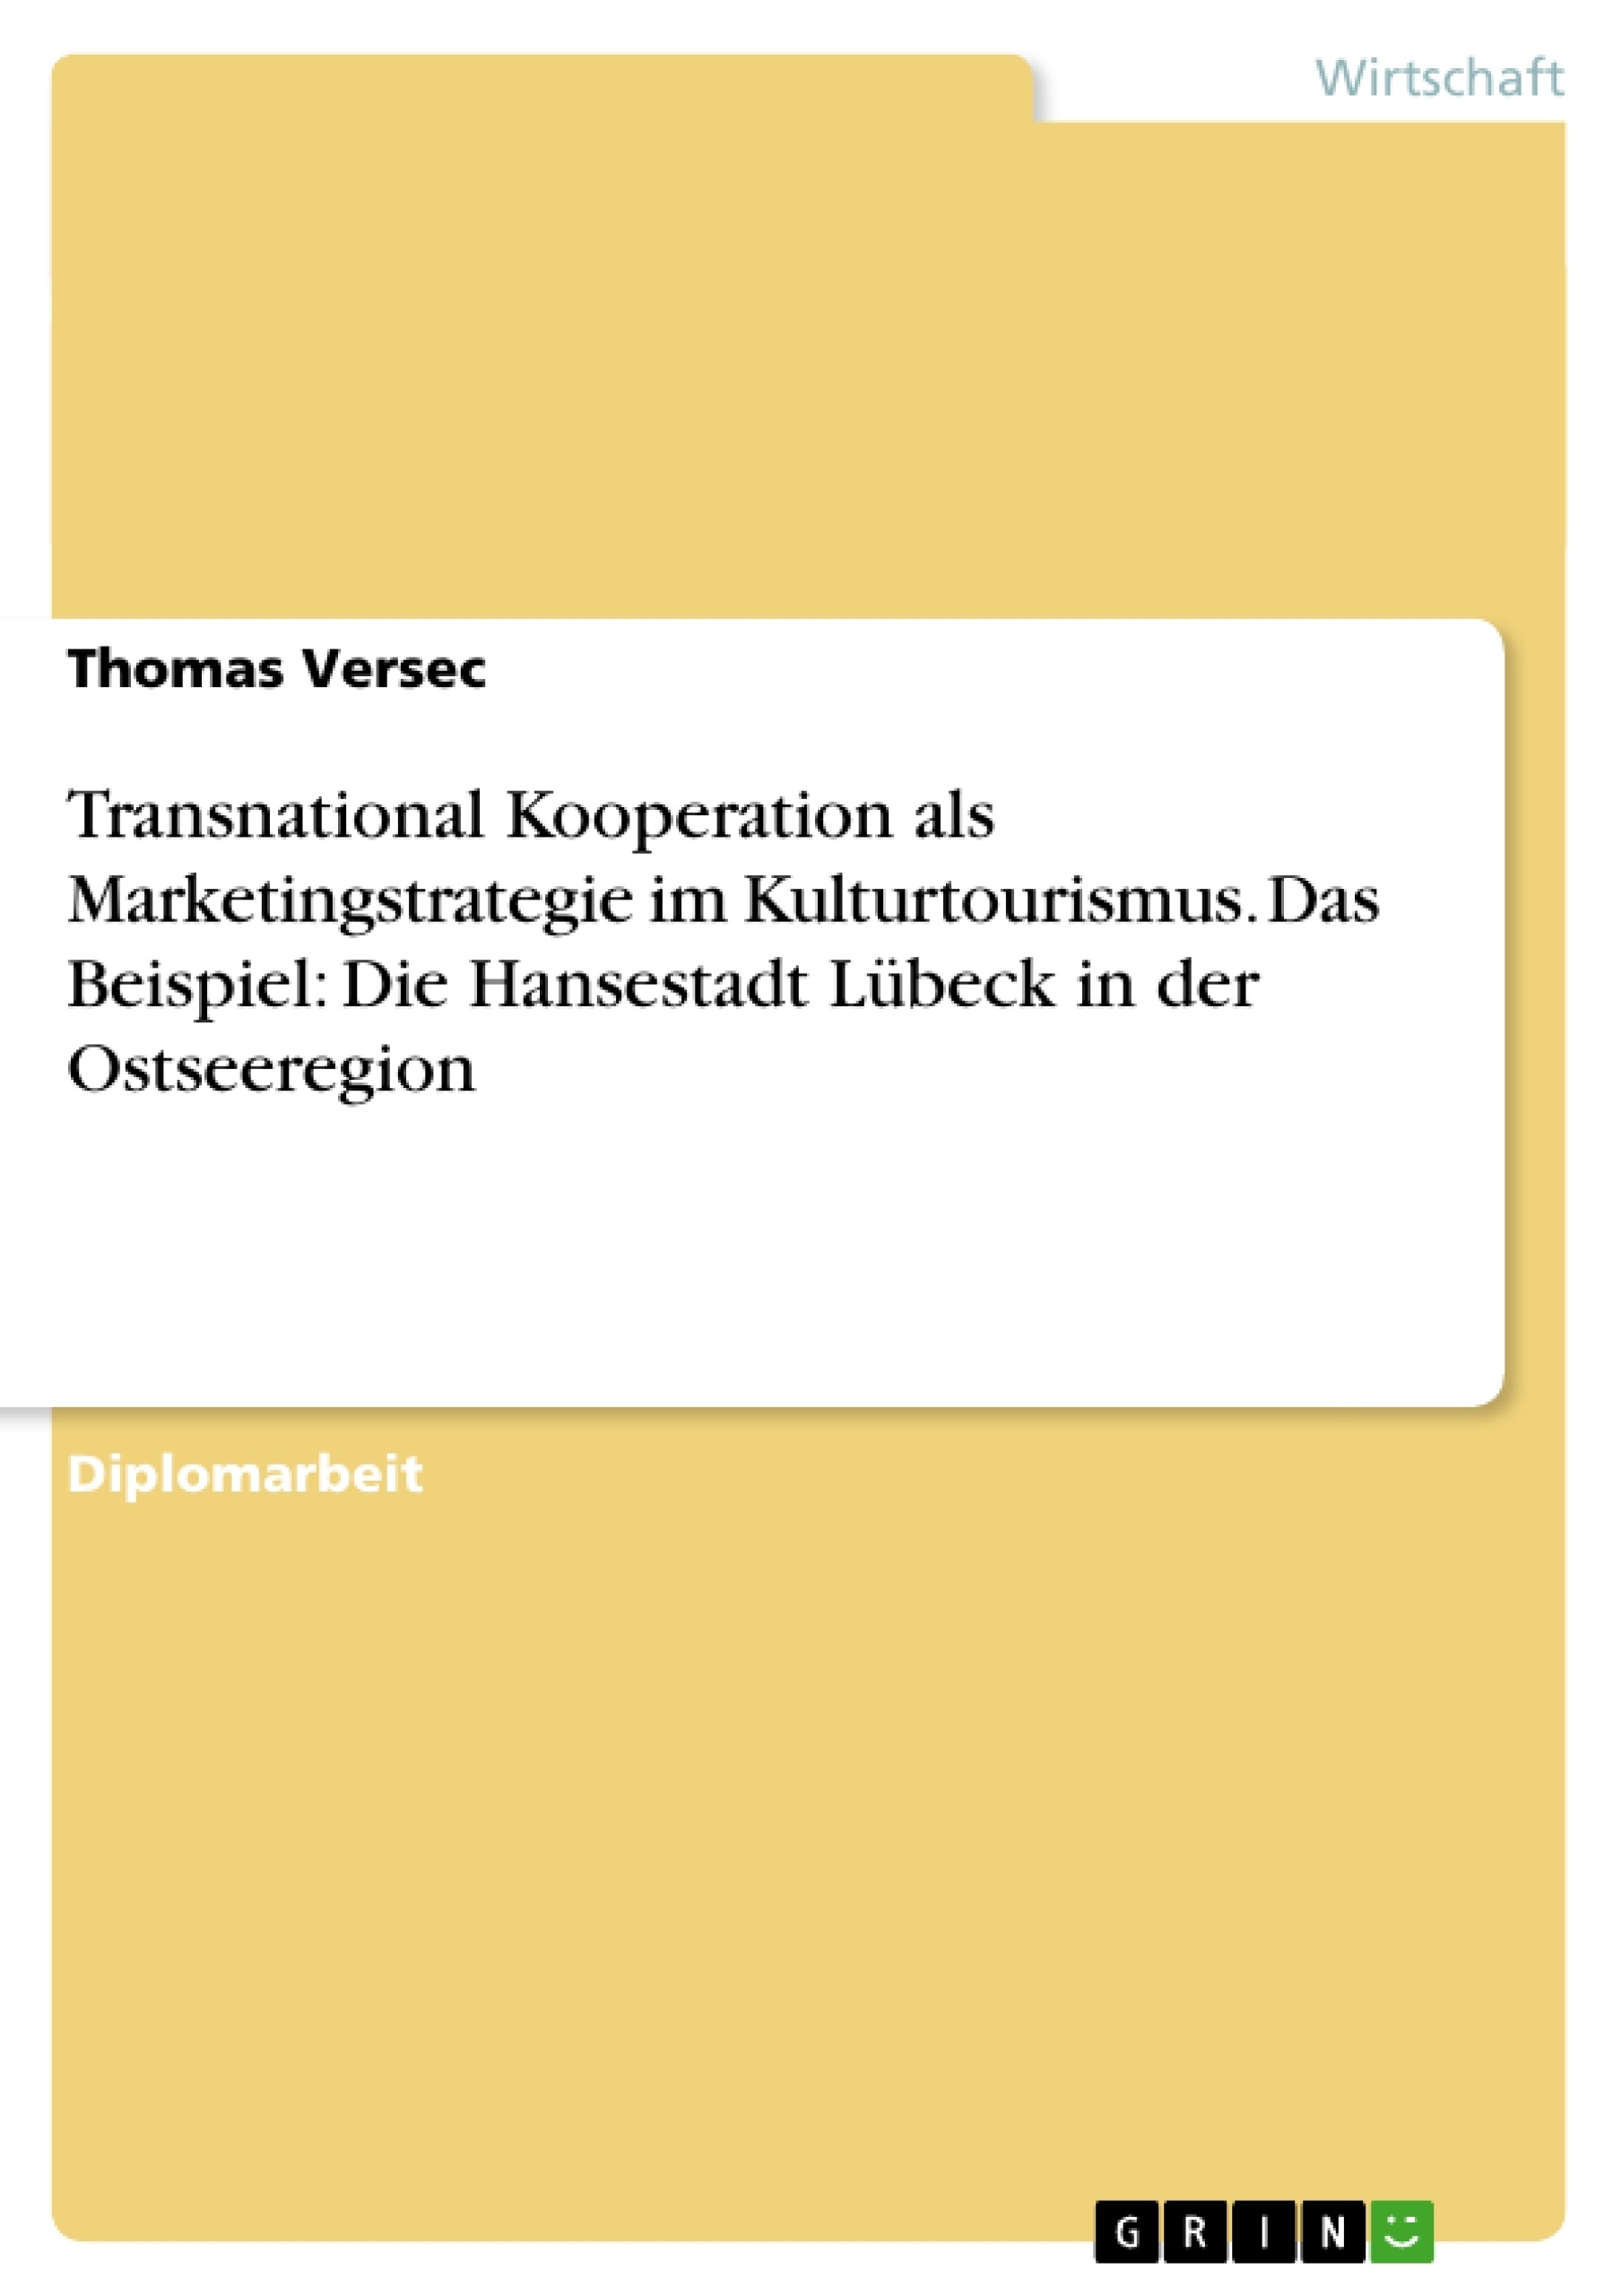 Title: Transnational Kooperation als Marketingstrategie im Kulturtourismus. Das Beispiel: Die Hansestadt Lübeck in der Ostseeregion